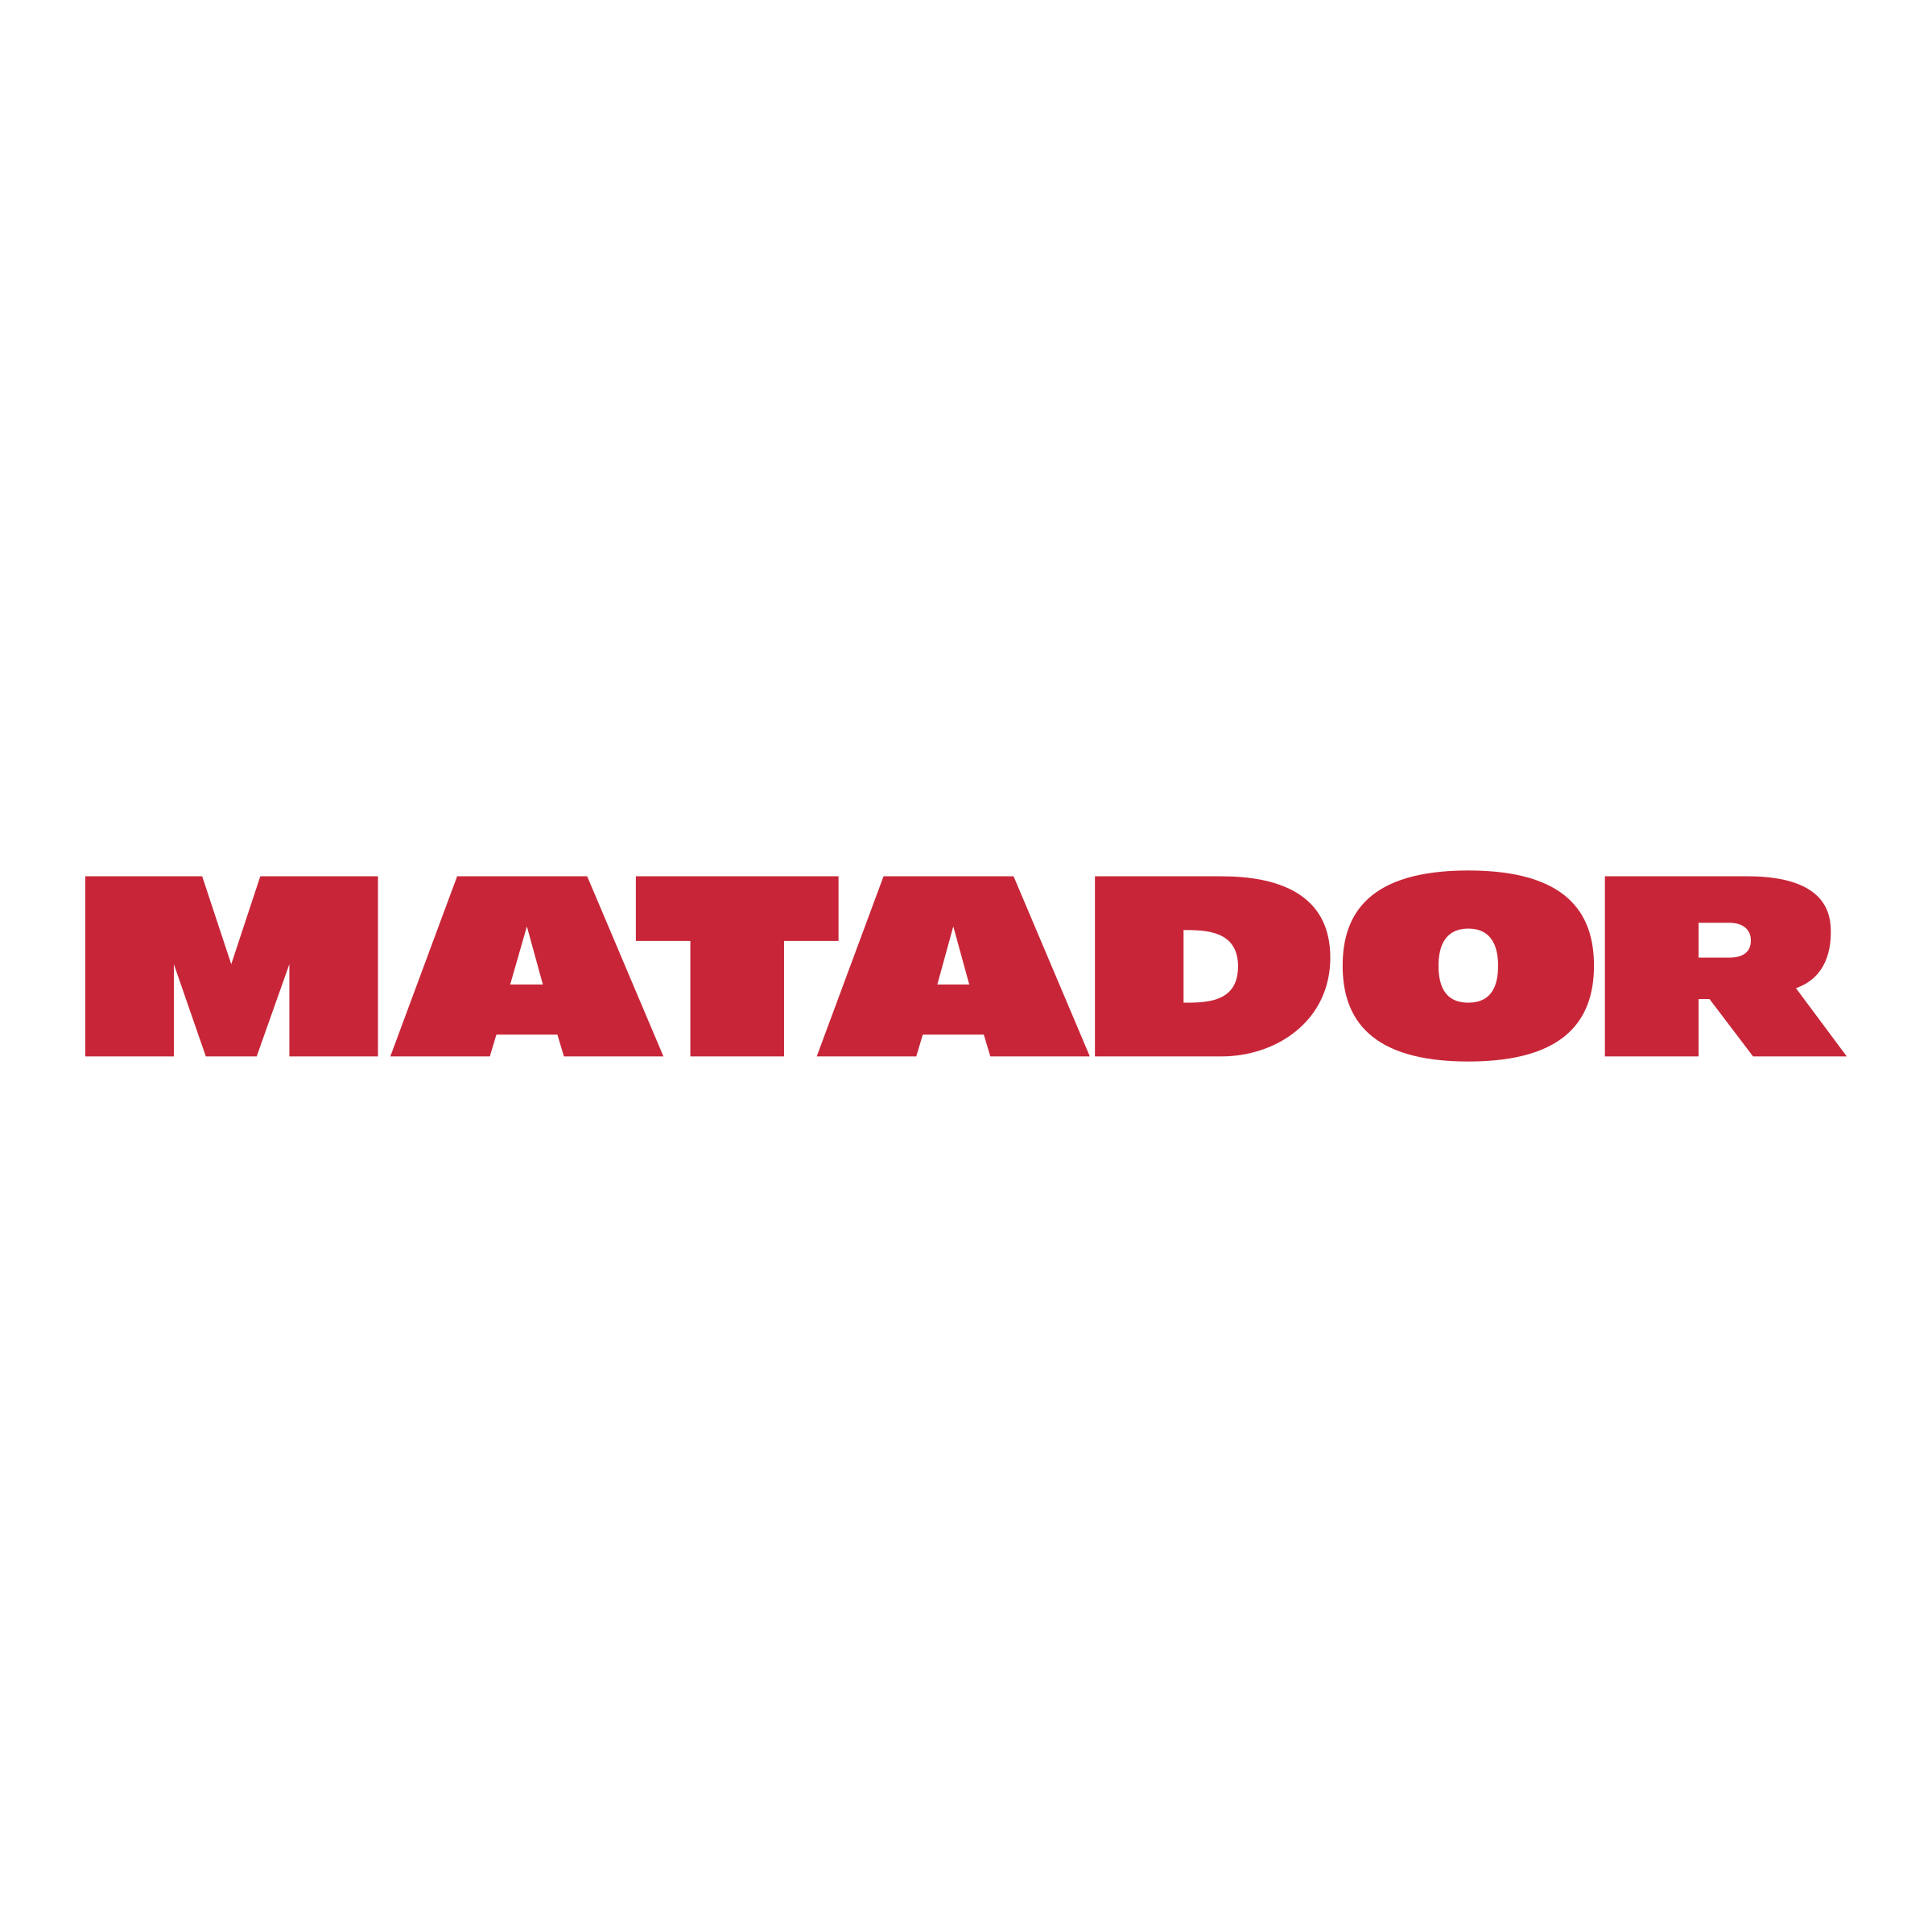 Matador Logo - Matador Logo PNG Transparent & SVG Vector